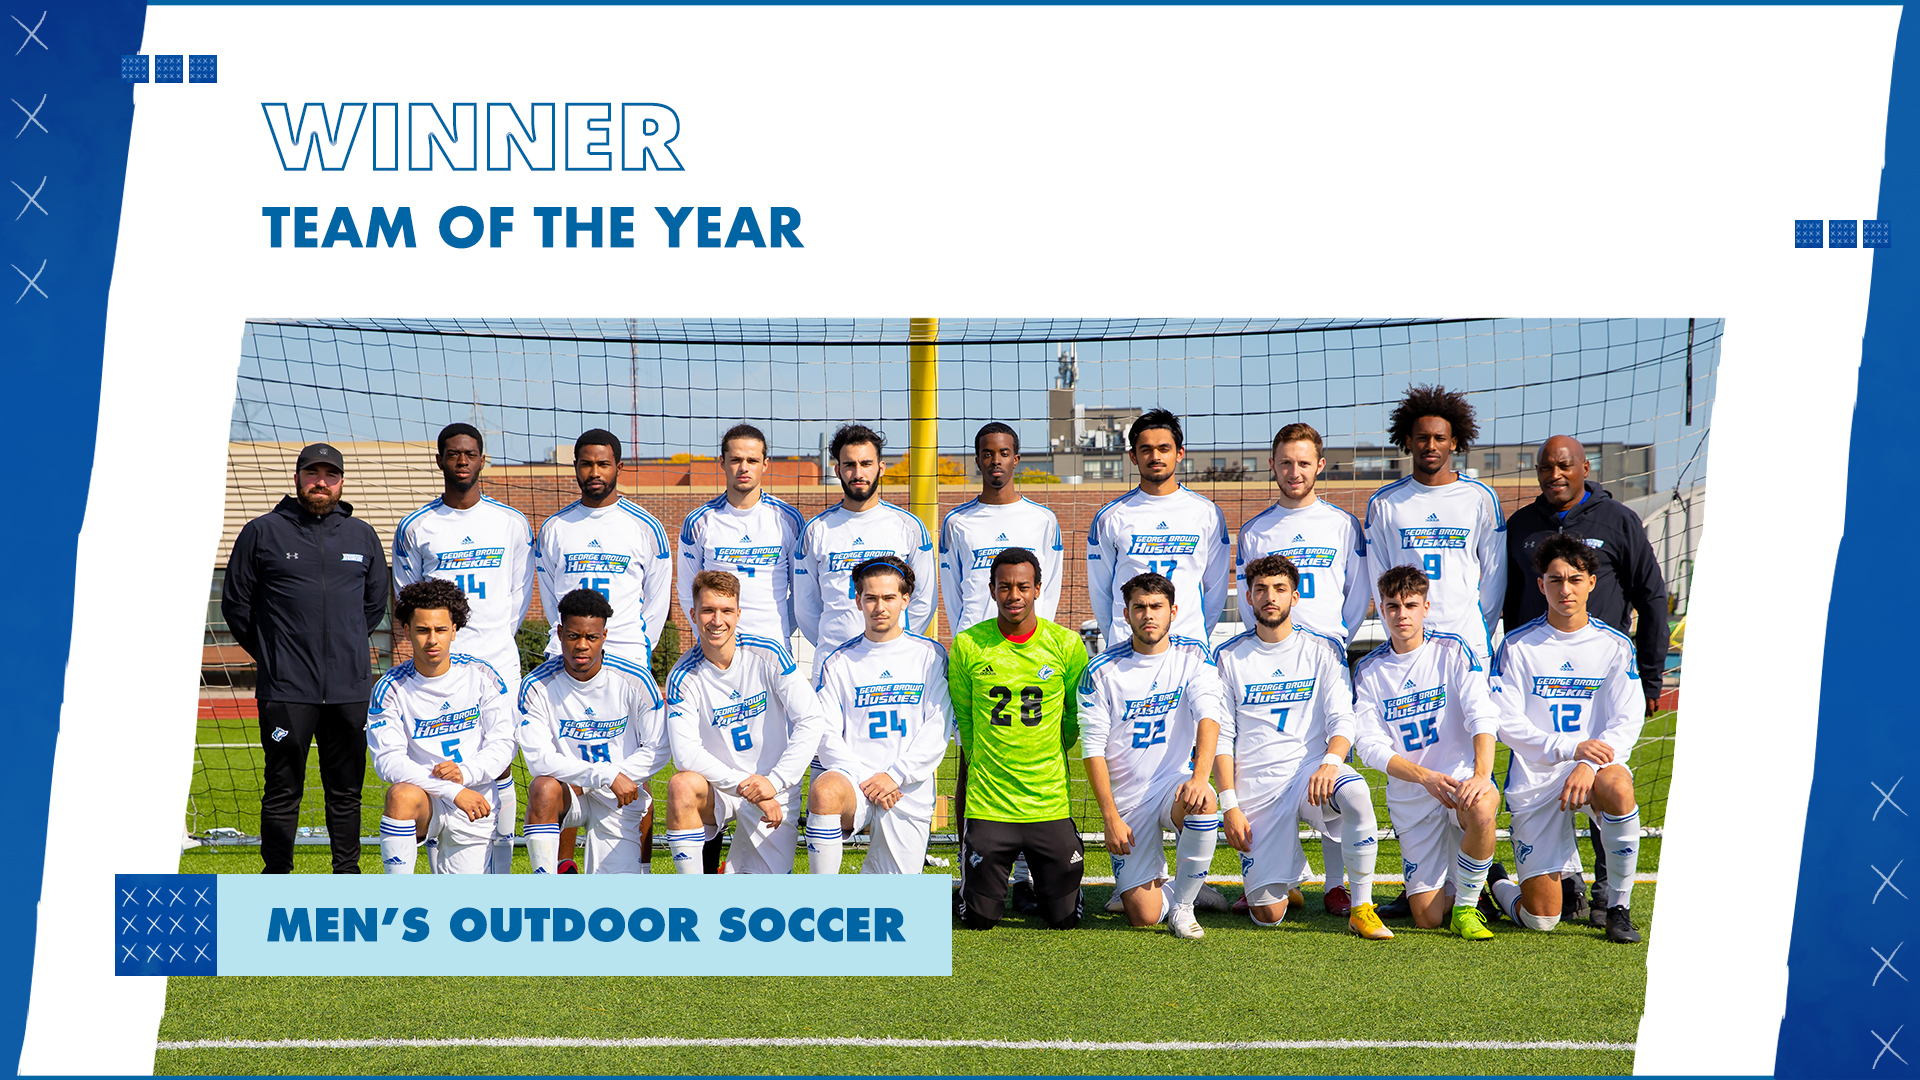 Winner team of the yearmen's outdoor soccer